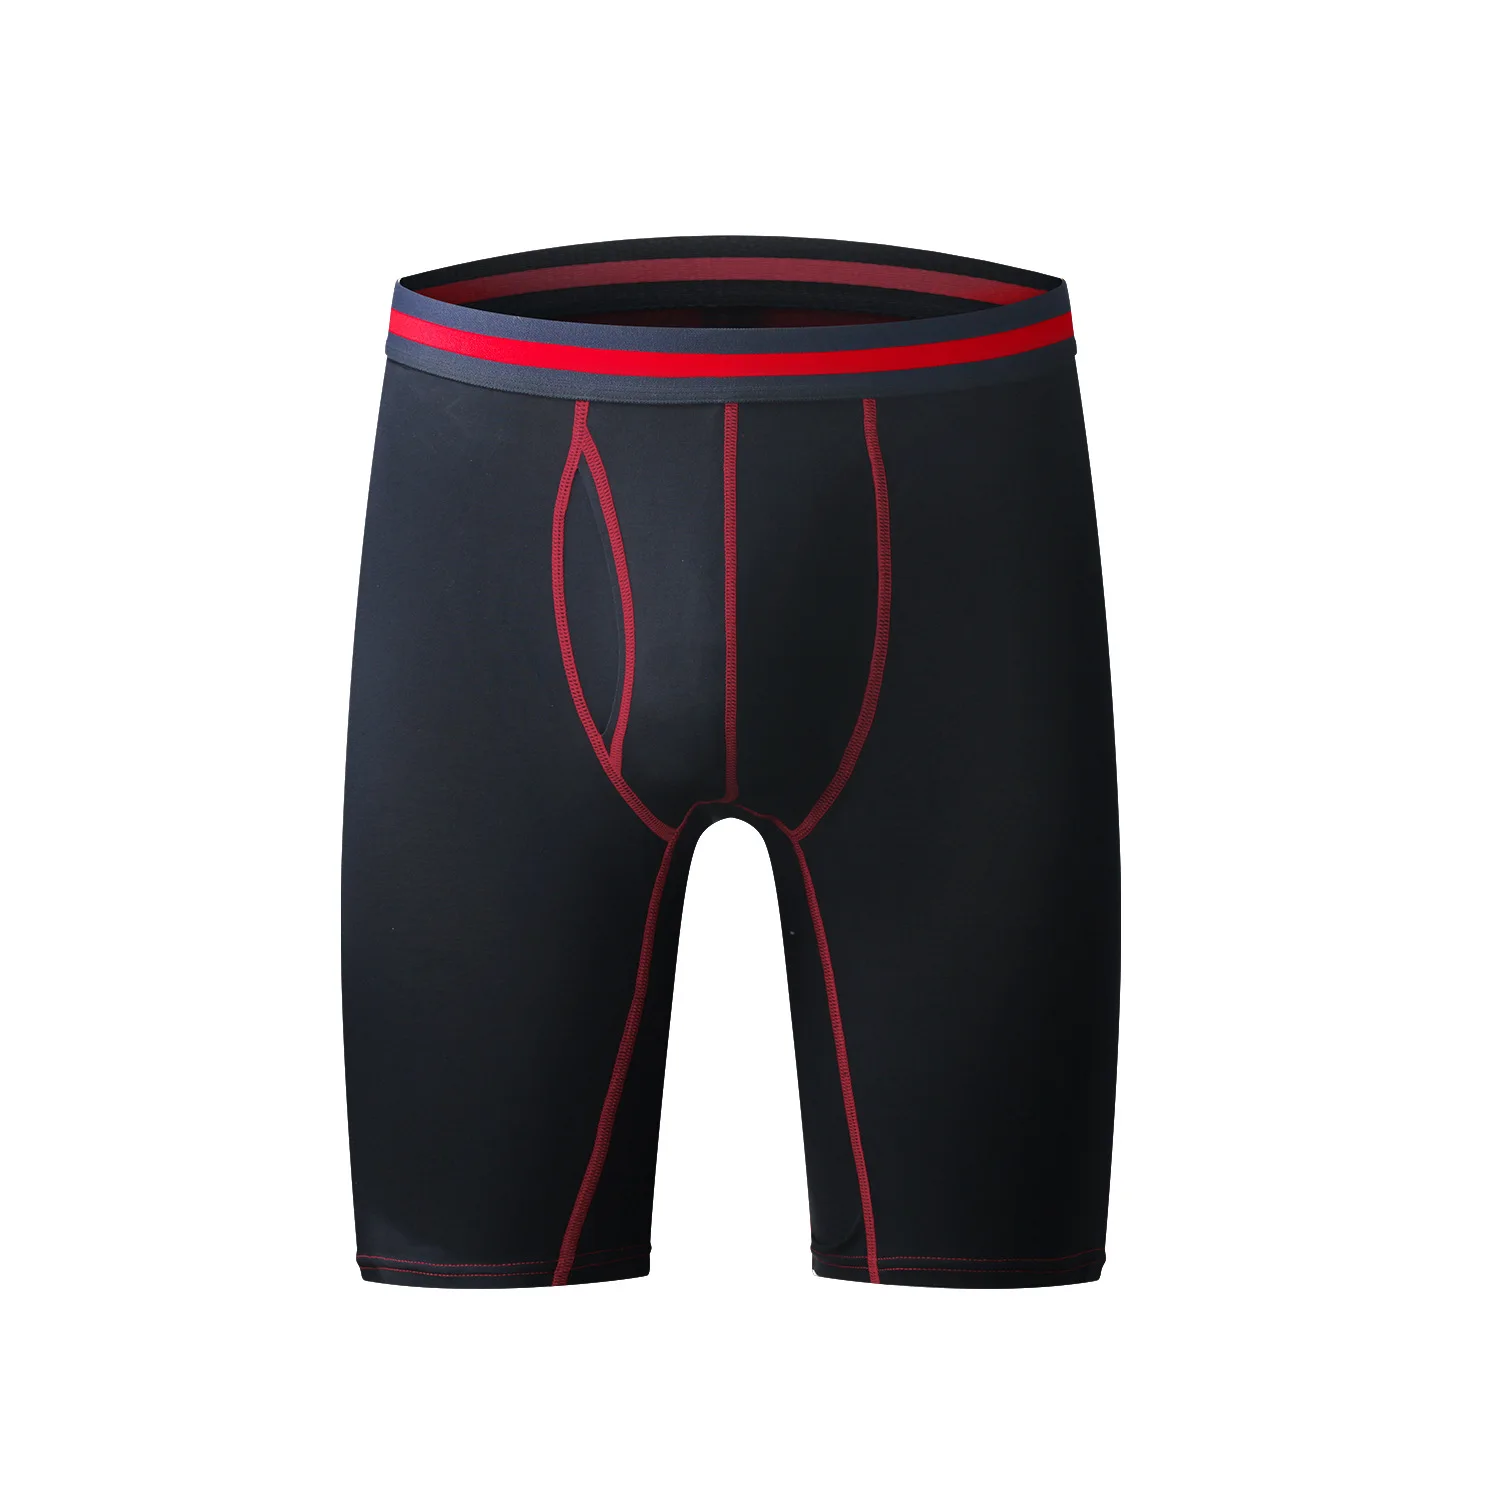 Sport Men Boxers Cotton Breathable Panties Man Underwear Boxershorts Plus  Size 3XL Fitness Underpants cuecas boxer masculina